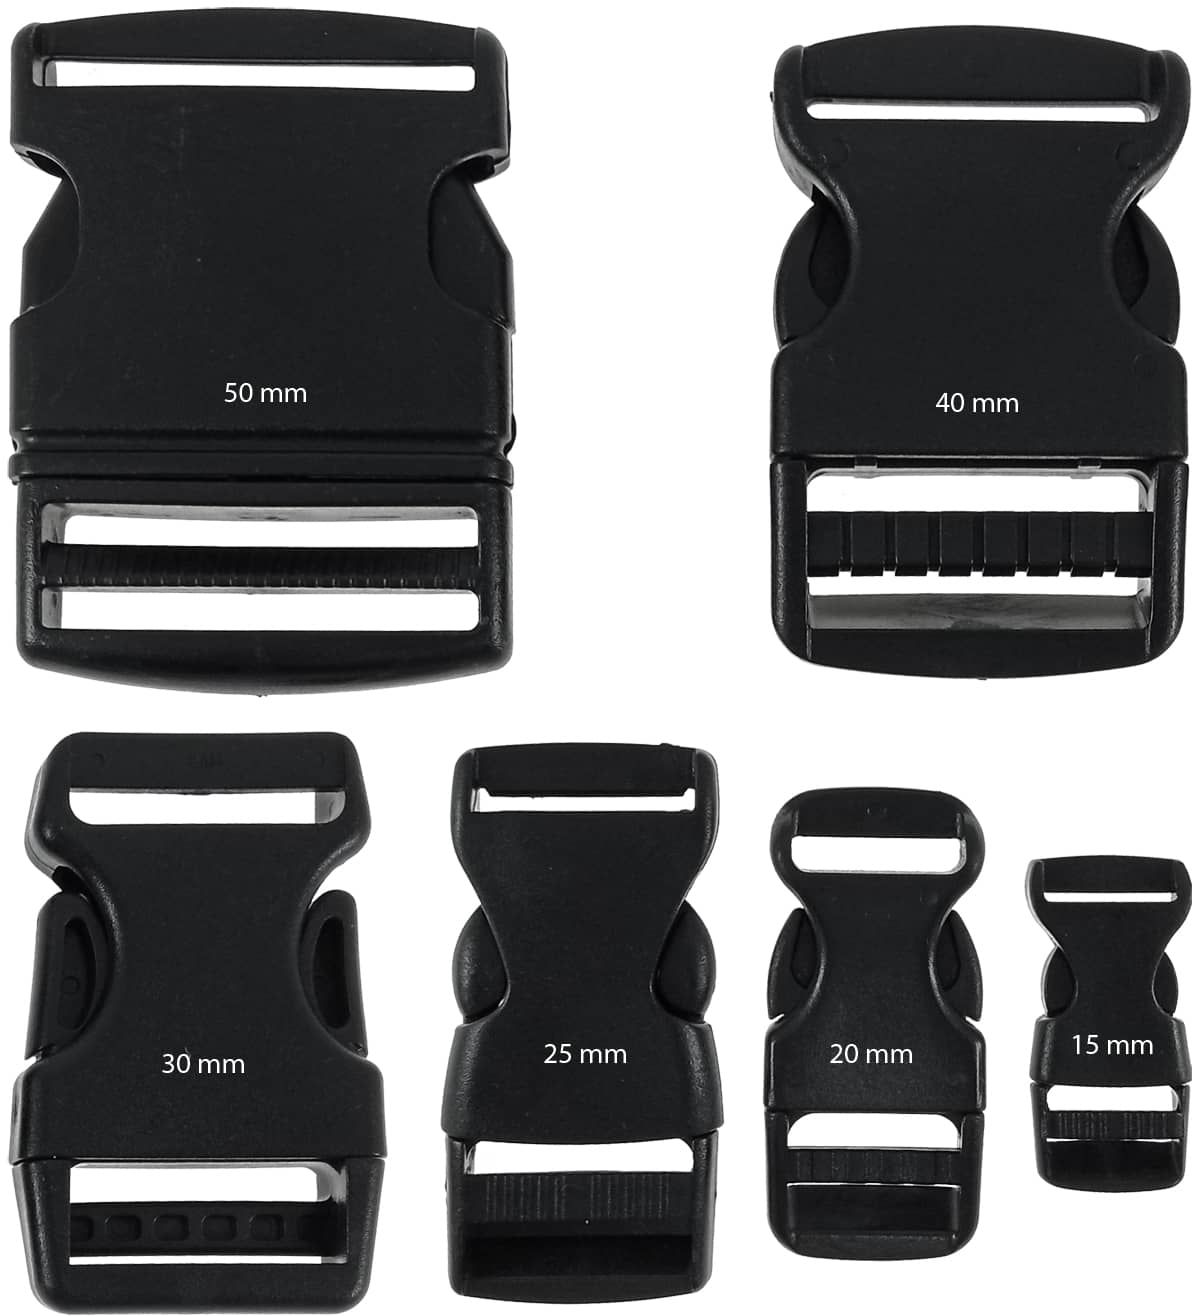 Tipos de cierre plástico negro para mochilas para cintas de mochila de 15 mm, 20 mm, 25 mm, 30 mm, 40 mm y 50 mm.